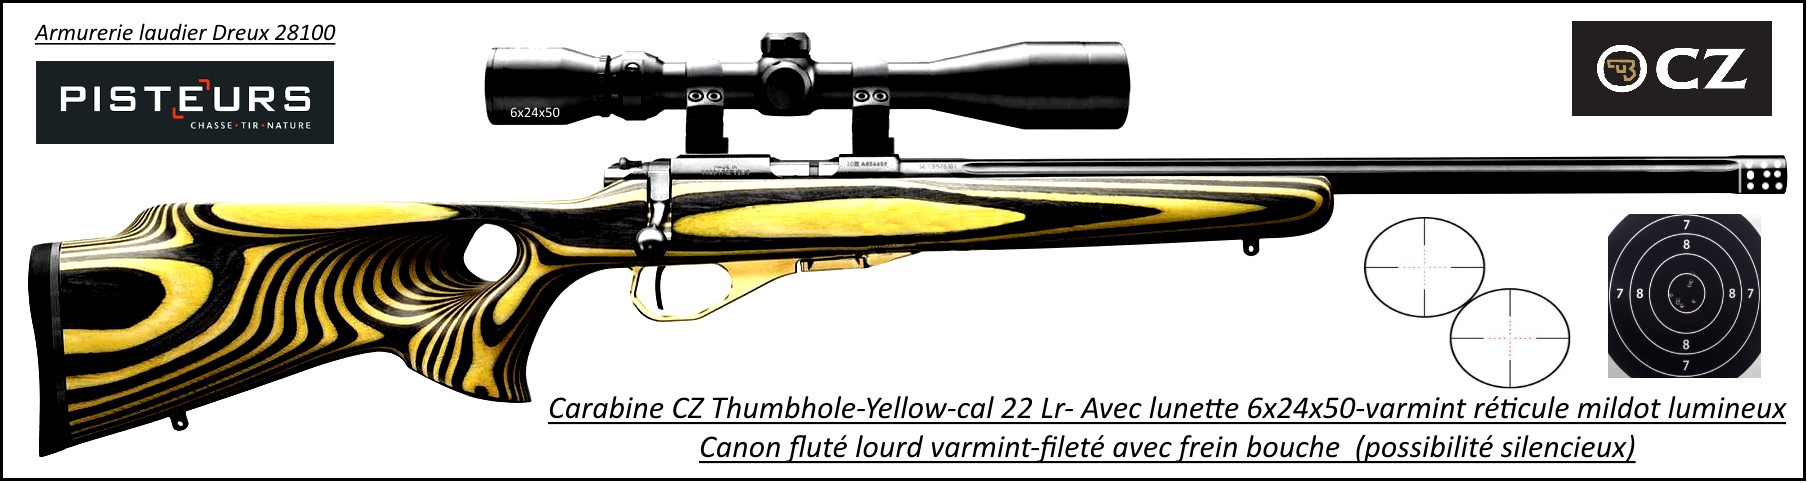 Carabine CZ  Mod 455 THUMBOLE yellow Calibre 22 LR Répétition Avec lunette varmint 6x24x50 mil dot lumineux vert/rouge-Promotion- R778687-bis